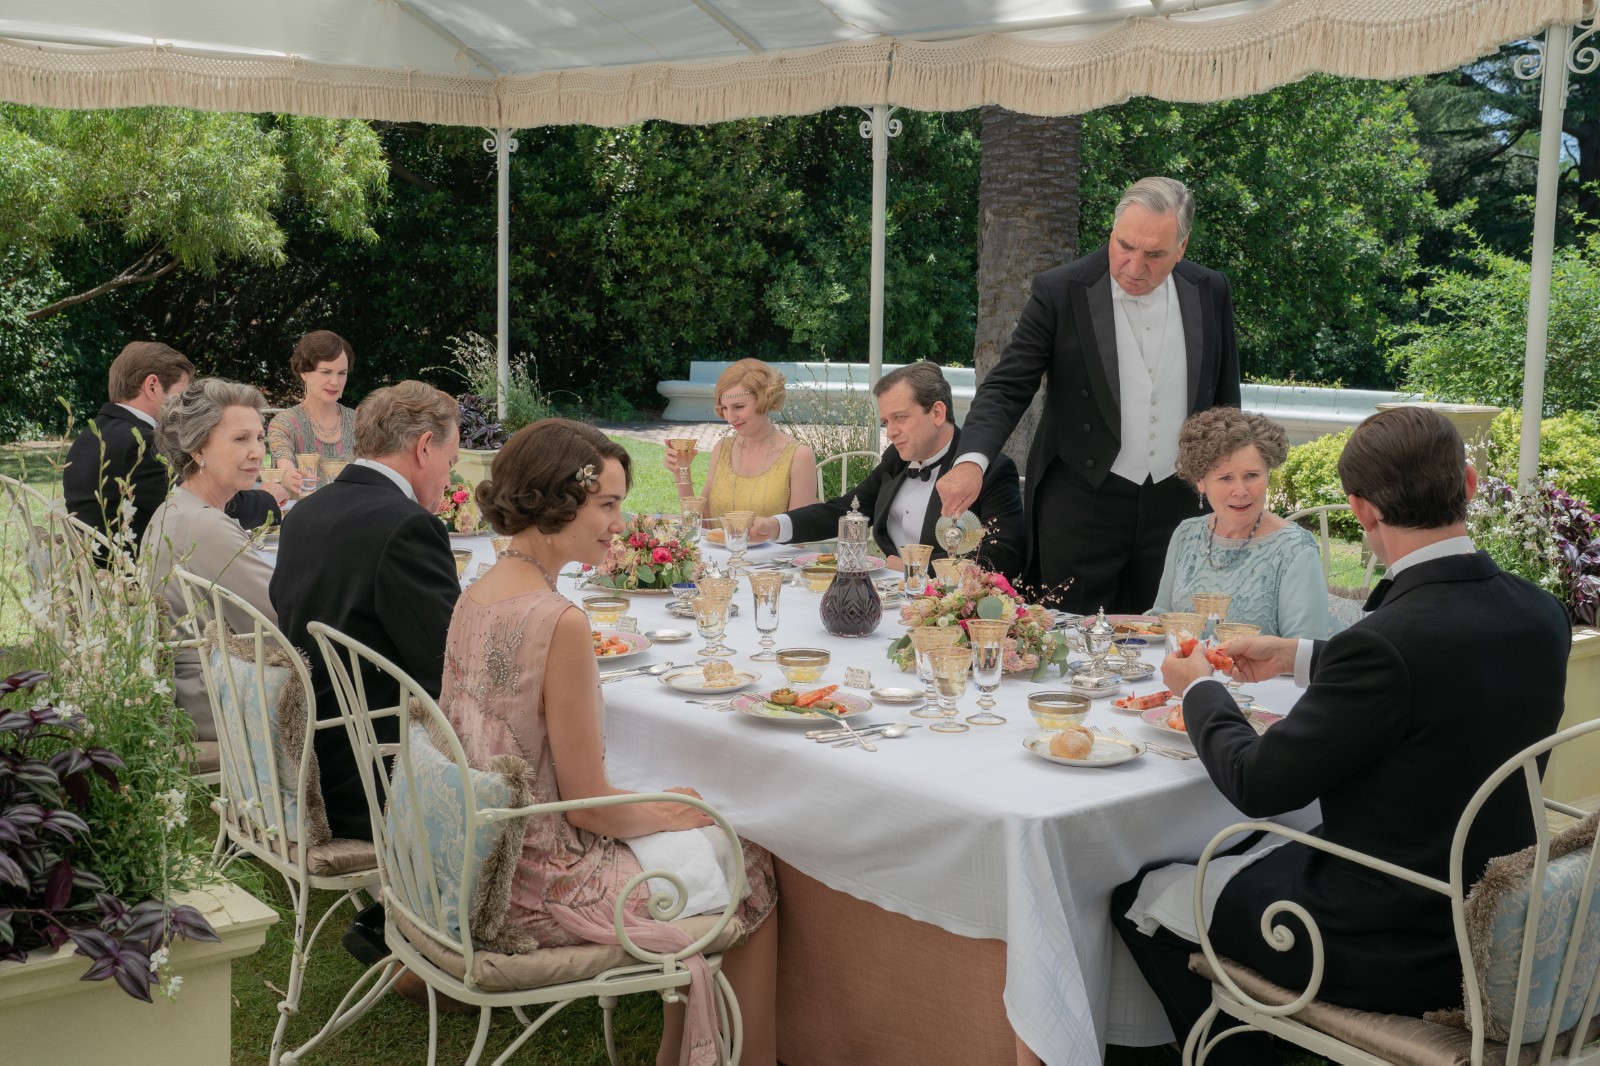 Szenenbild 1 vom Film Downton Abbey 2: Eine neue Ära 